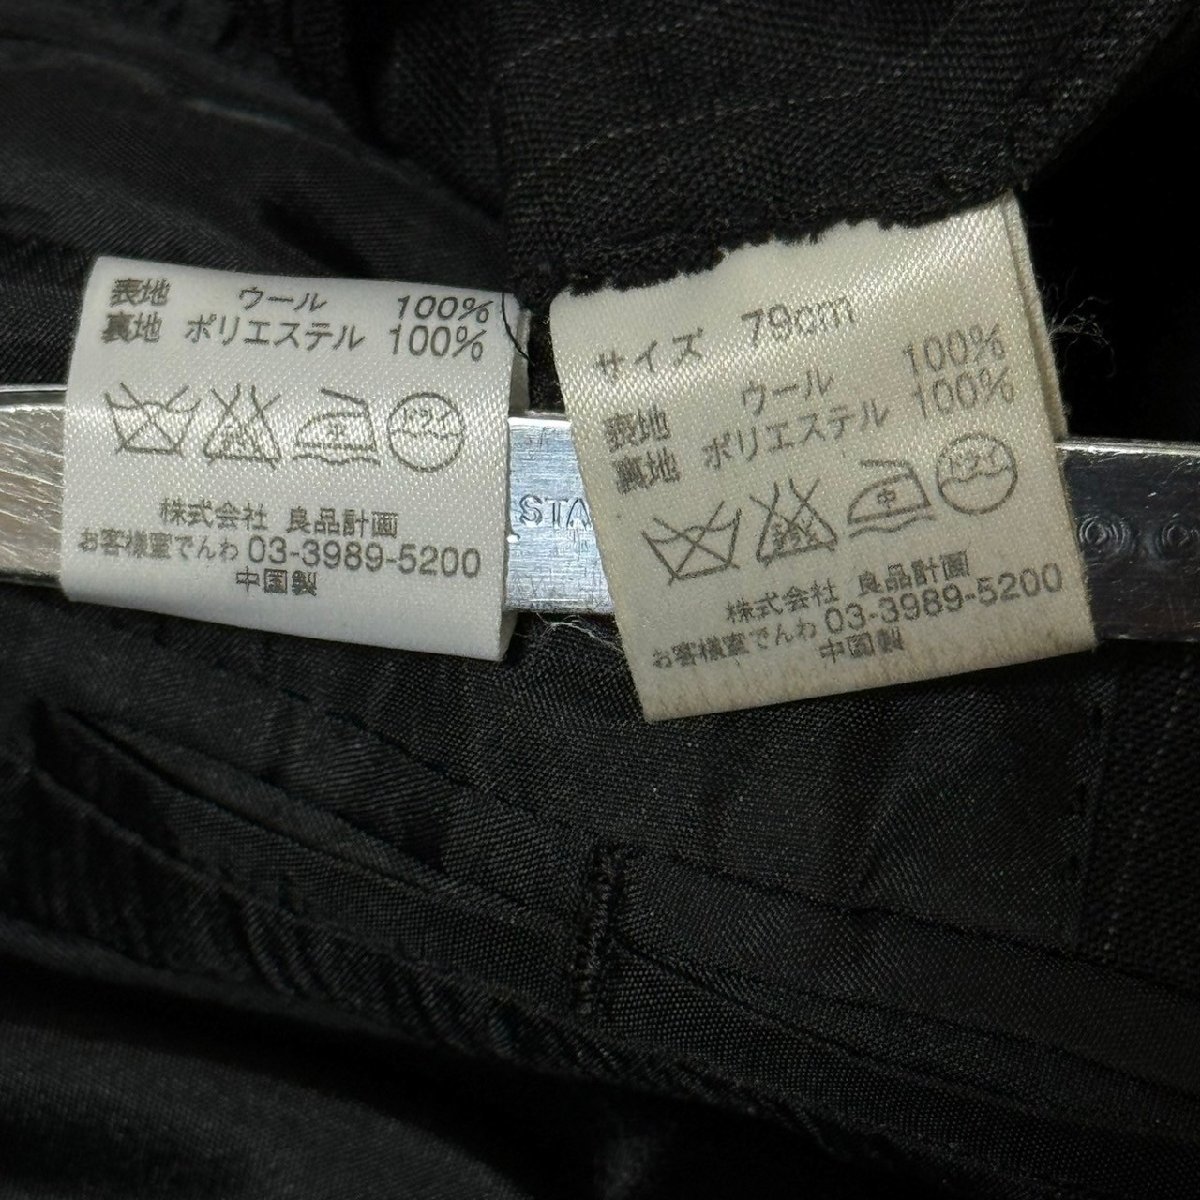 (^w^)b Muji Ryohin план MUJI окантовка рисунок костюм верх и низ выставить жакет lik route бизнес .. устройство на работу интервью чёрный M 79.8236EE